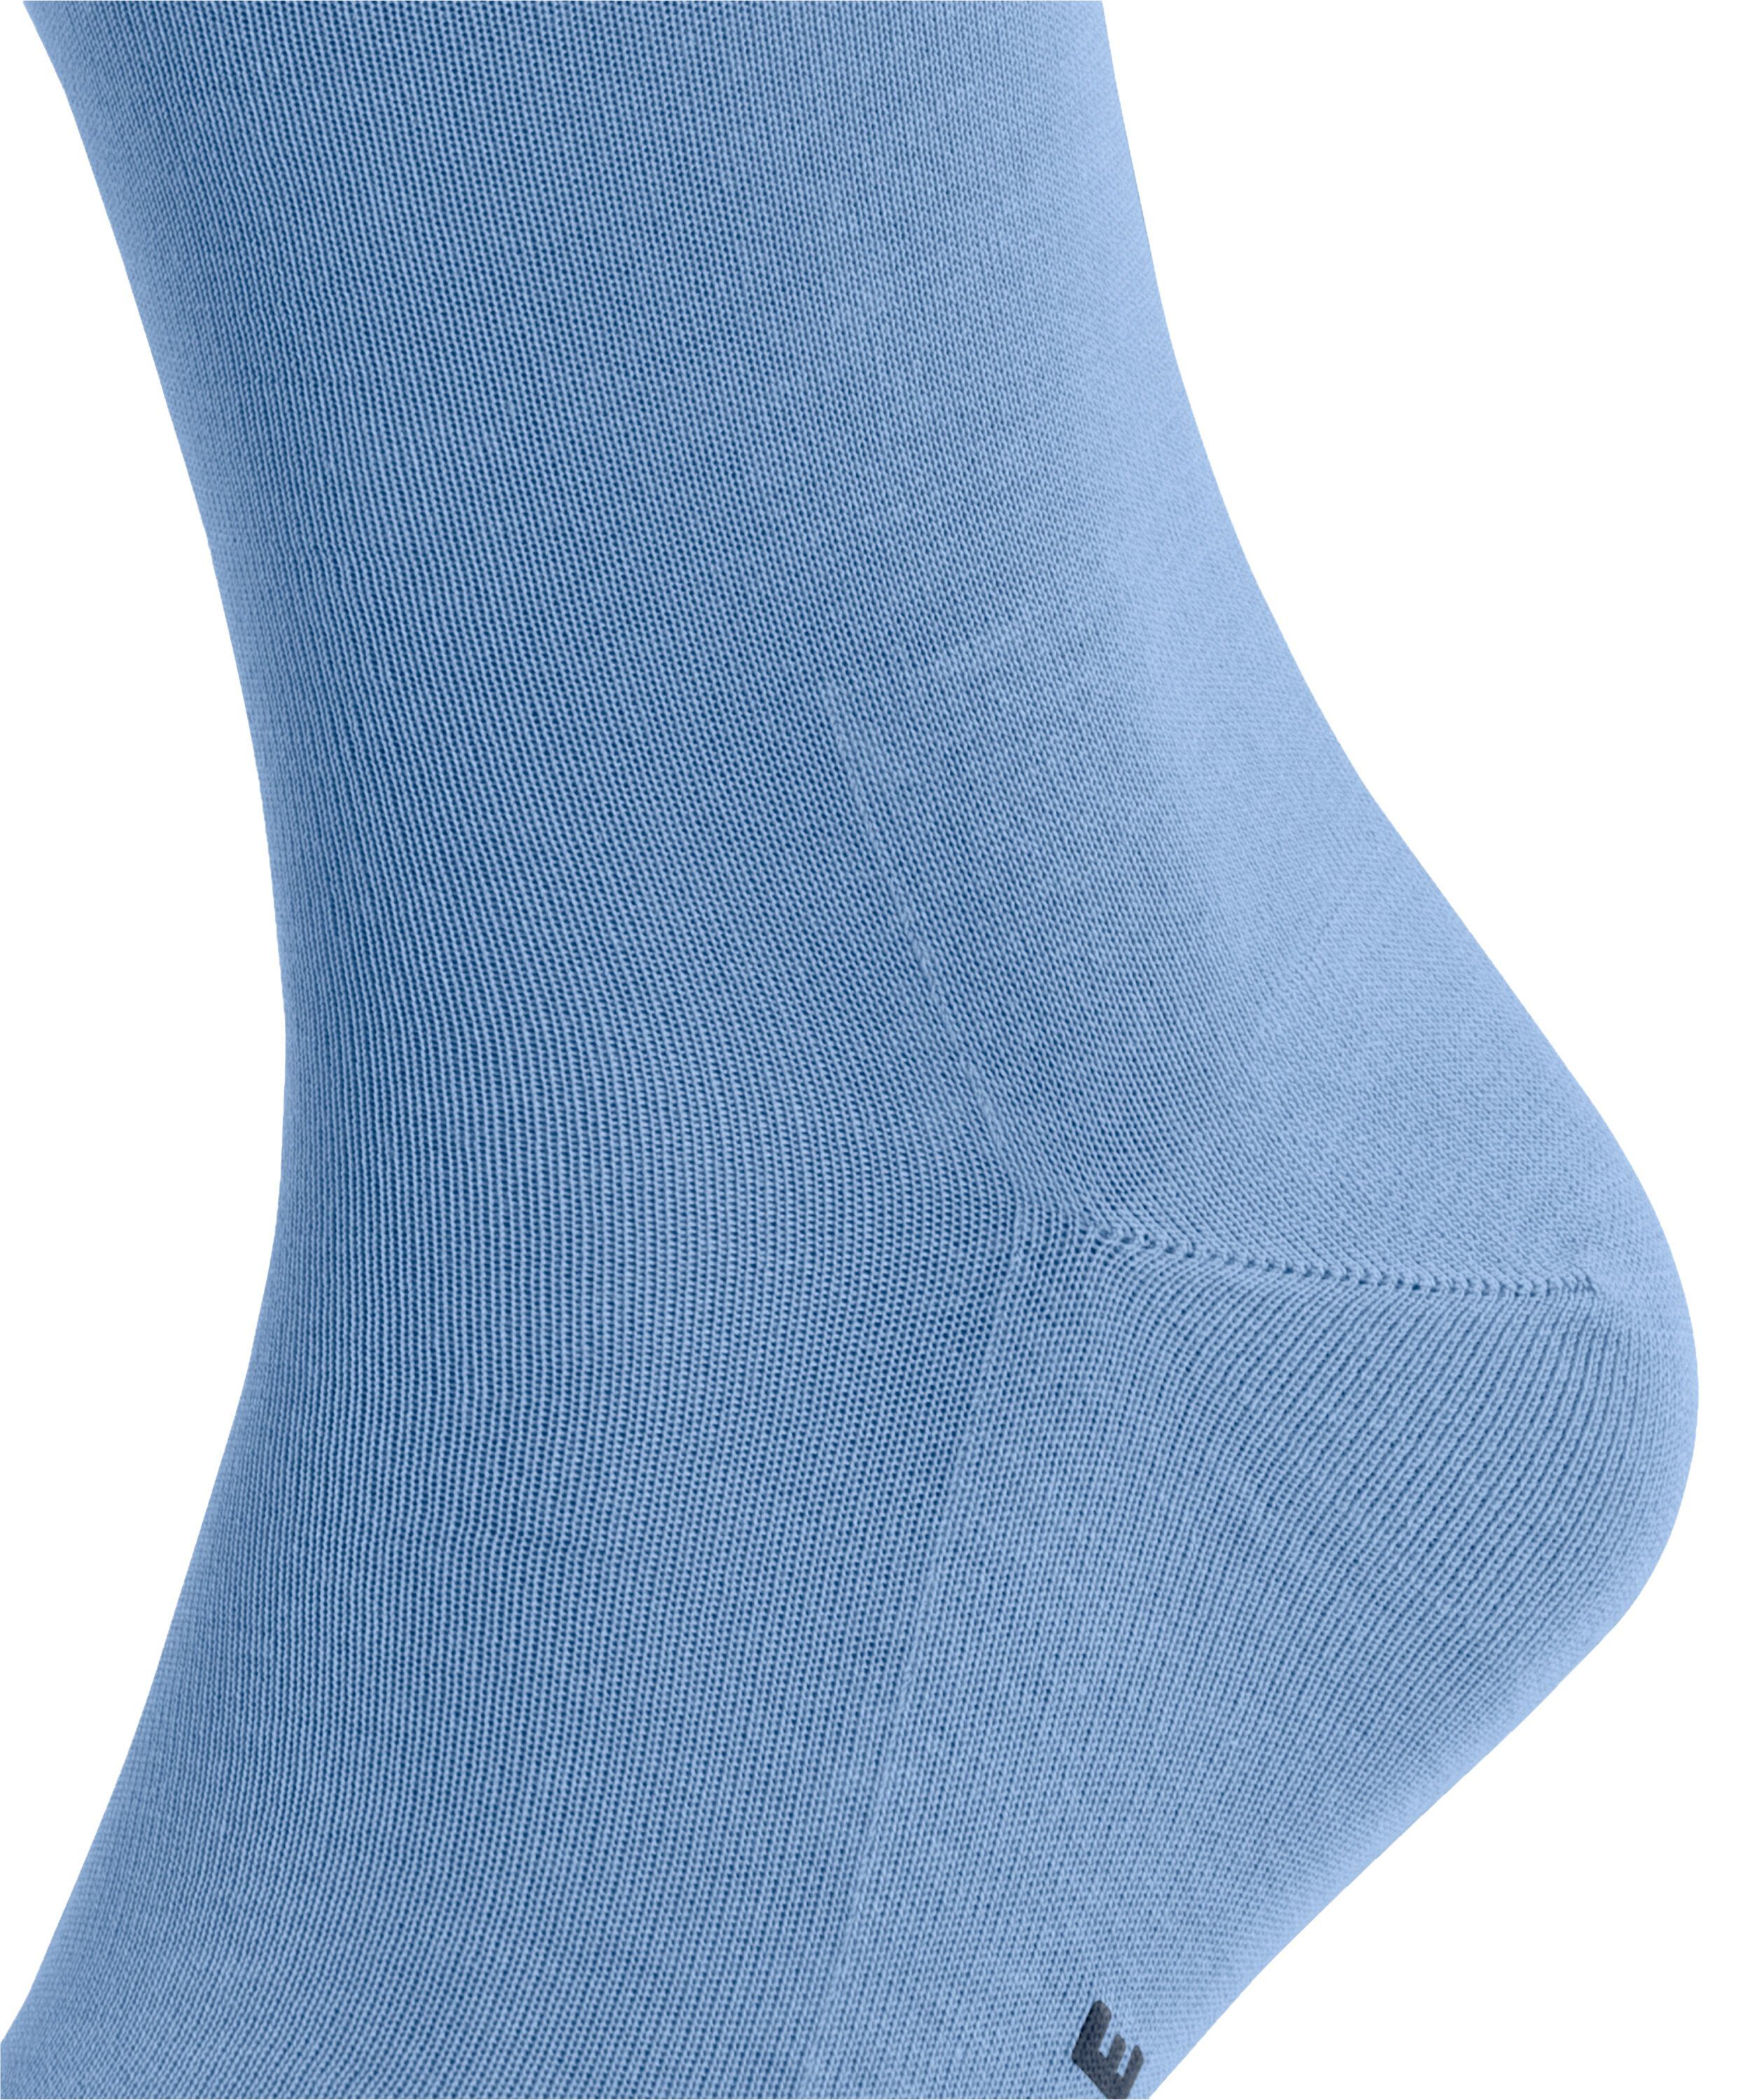 Tiago (6554) FALKE Socken blue cornflower (1-Paar)